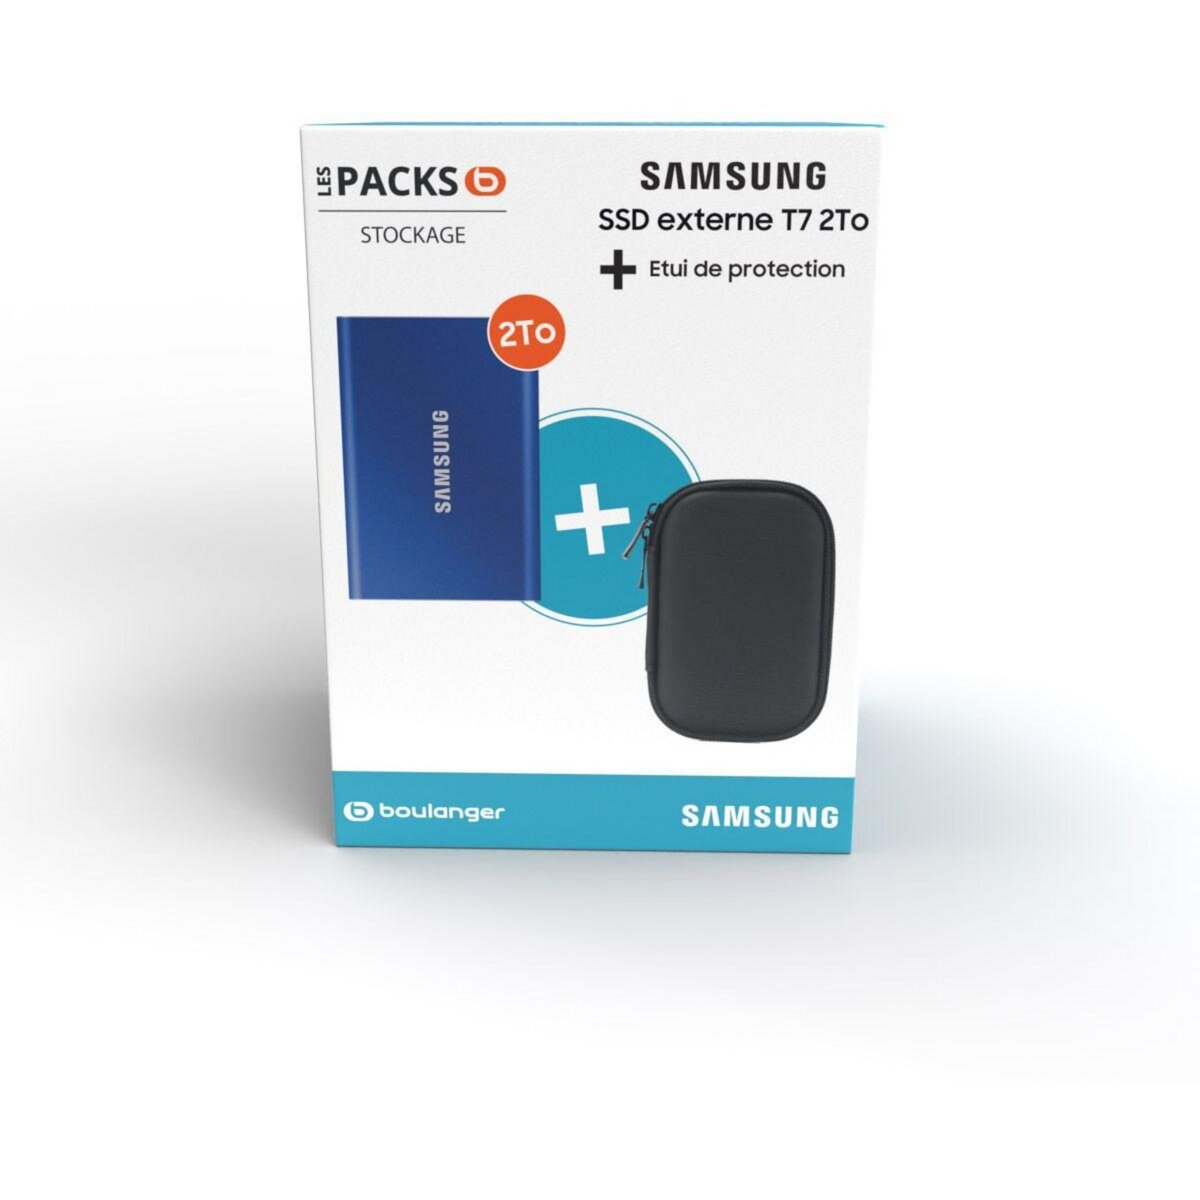 Samsung Disque dur SSD externe Pack T7 2To bleu + Etui pas cher 